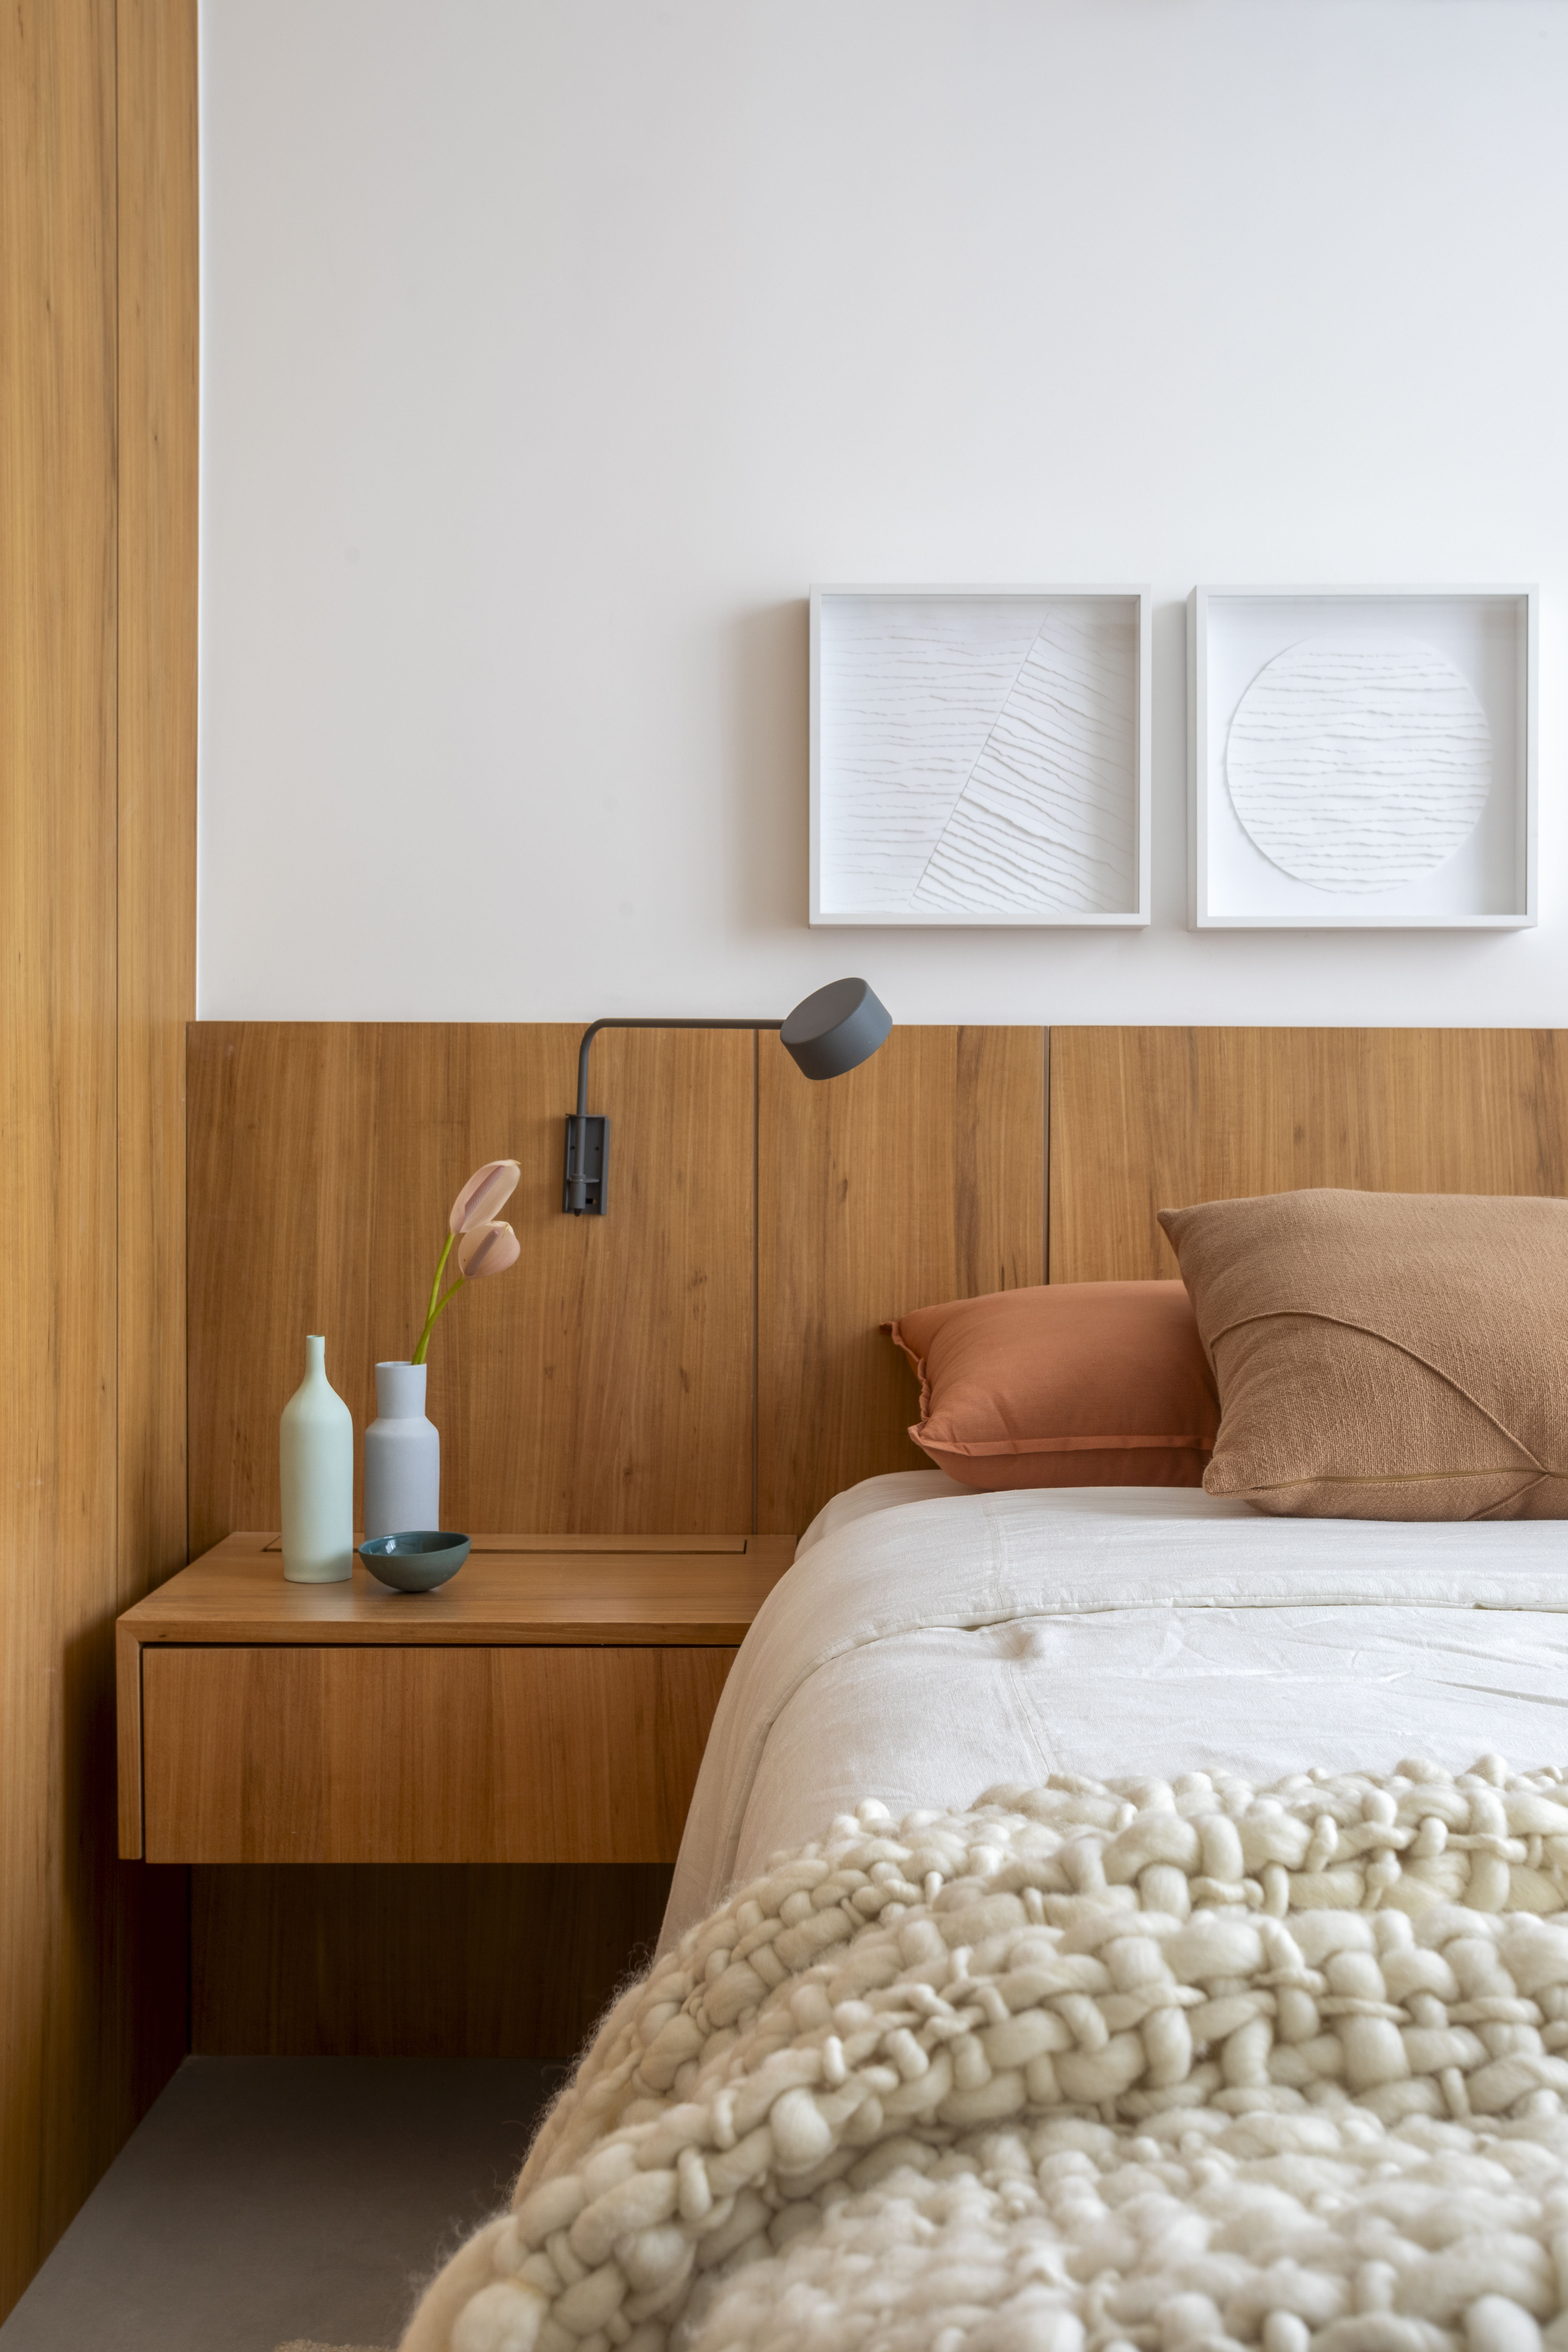 Branco e madeira criam décor cozy em apartamento de 70 m². Projeto de Rafael Ramos. Na foto, quarto de casal com cabeceira de madeira e quadros.